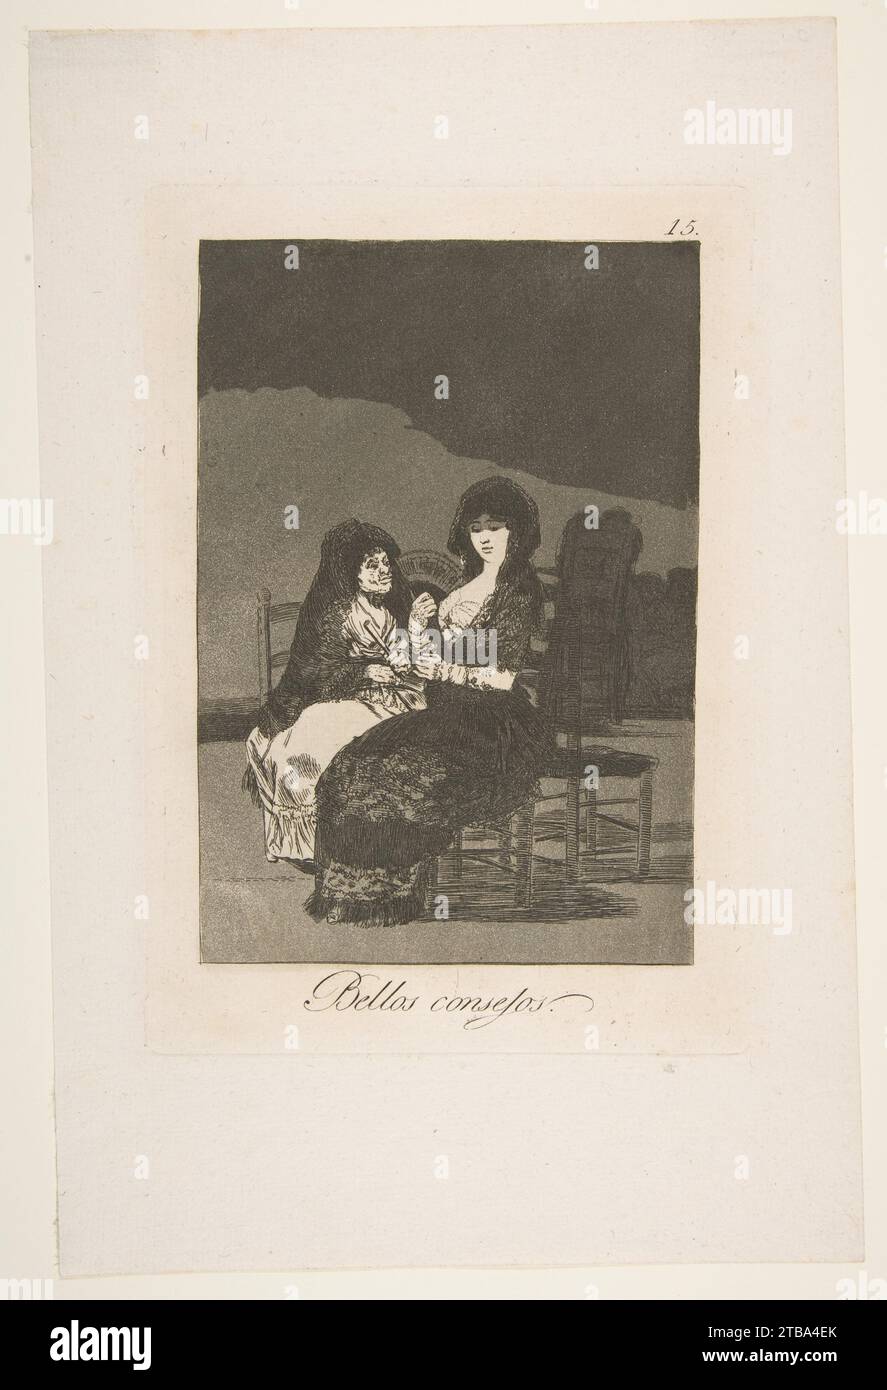 Planche 15 de 'Los Caprichos' : un joli conseil (Bellos conseilljos) 1916 de Goya (Francisco de Goya y Lucientes) Banque D'Images